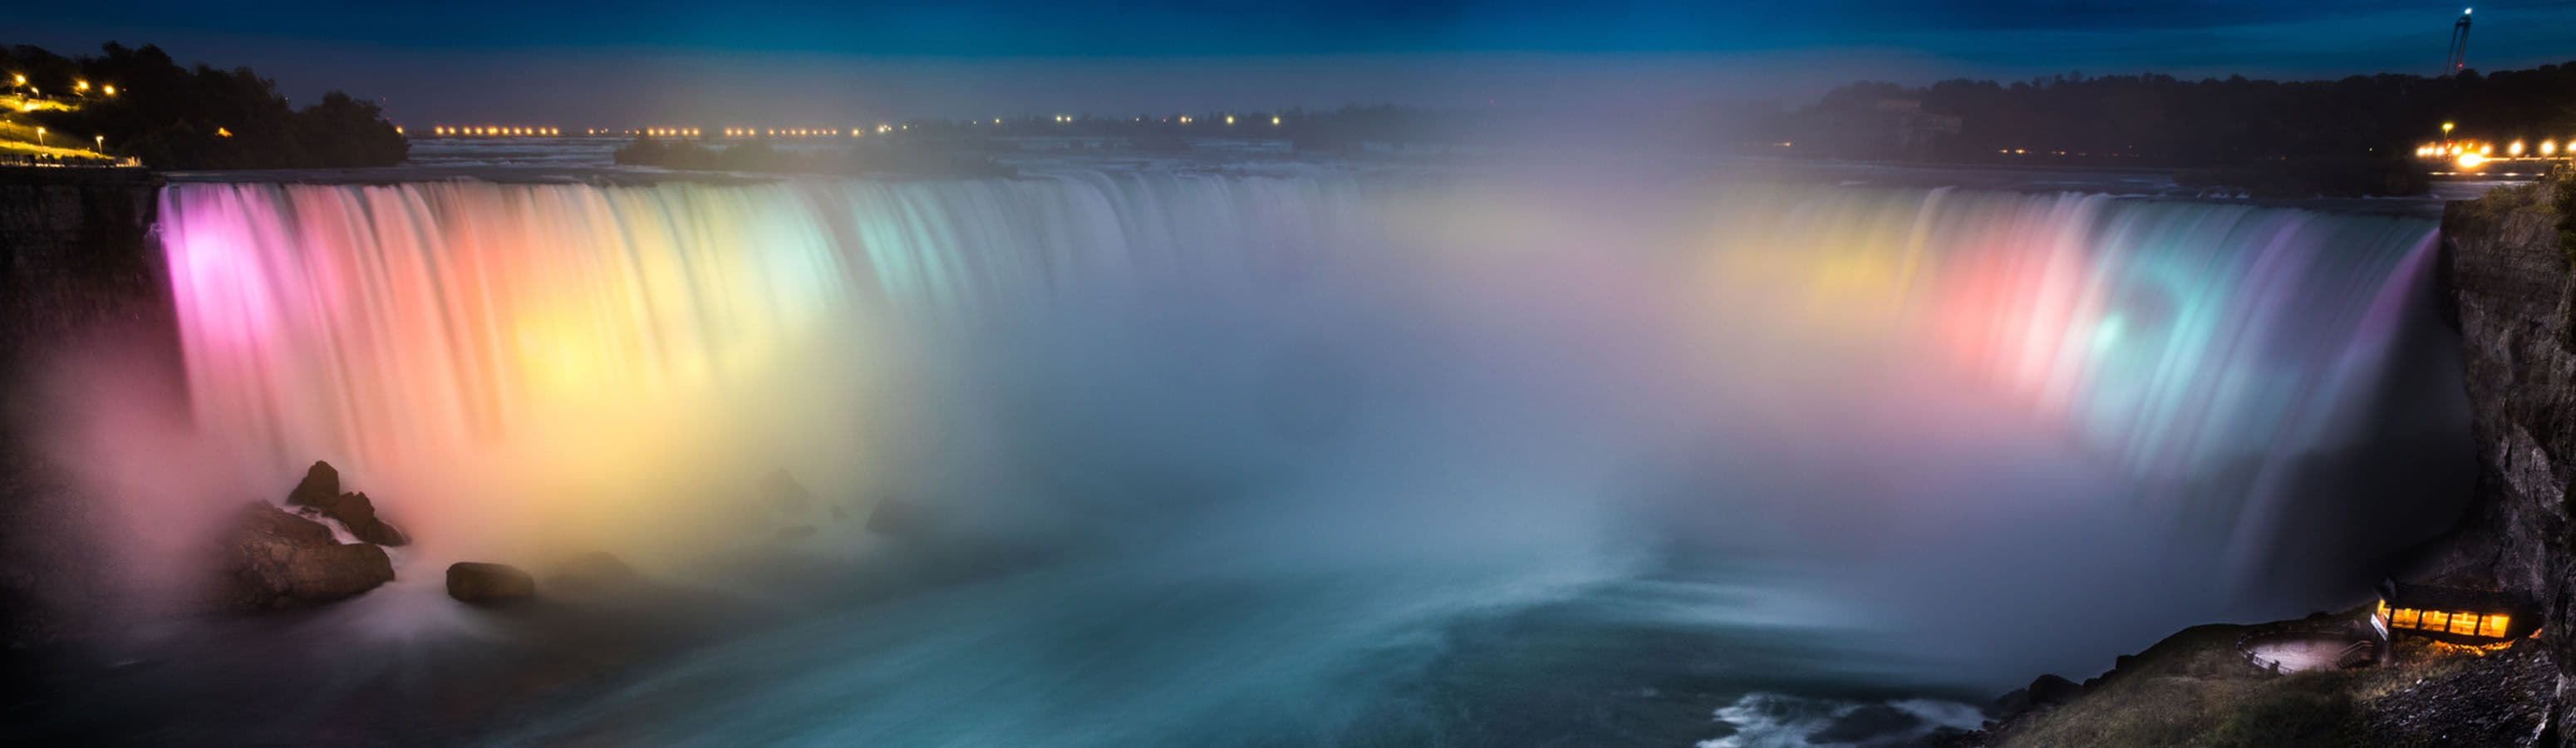 Niagara Falls twice